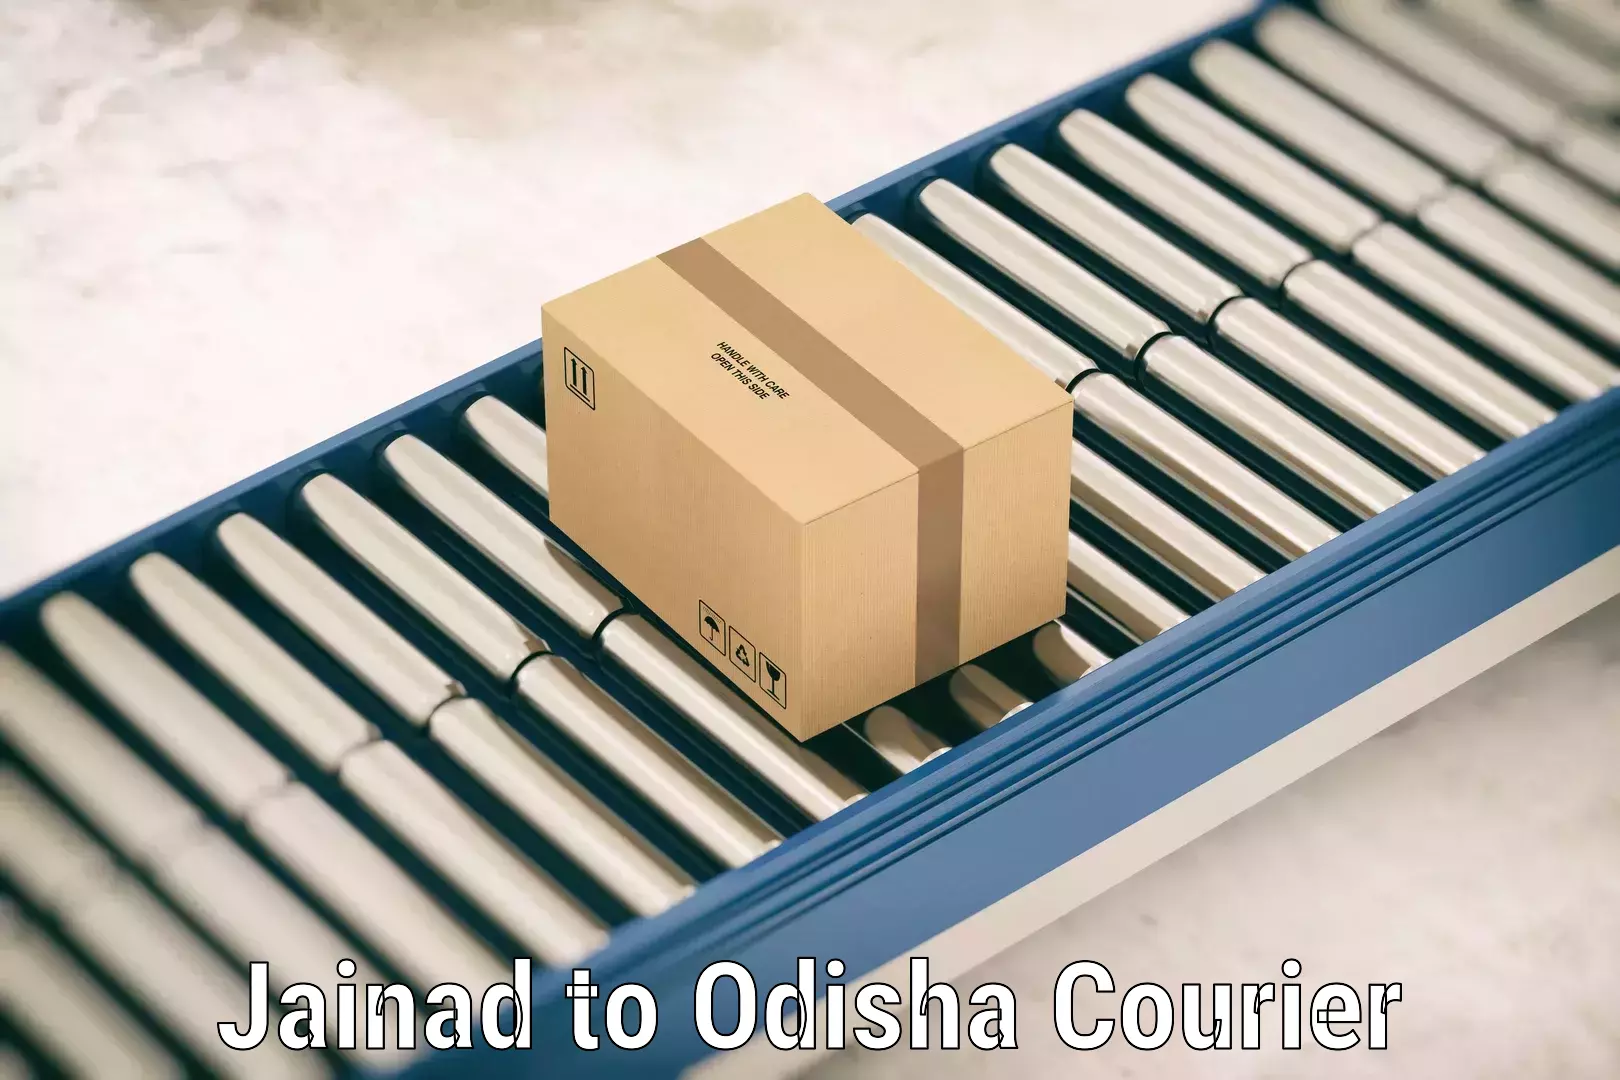 Luggage shipping rates calculator Jainad to Odisha